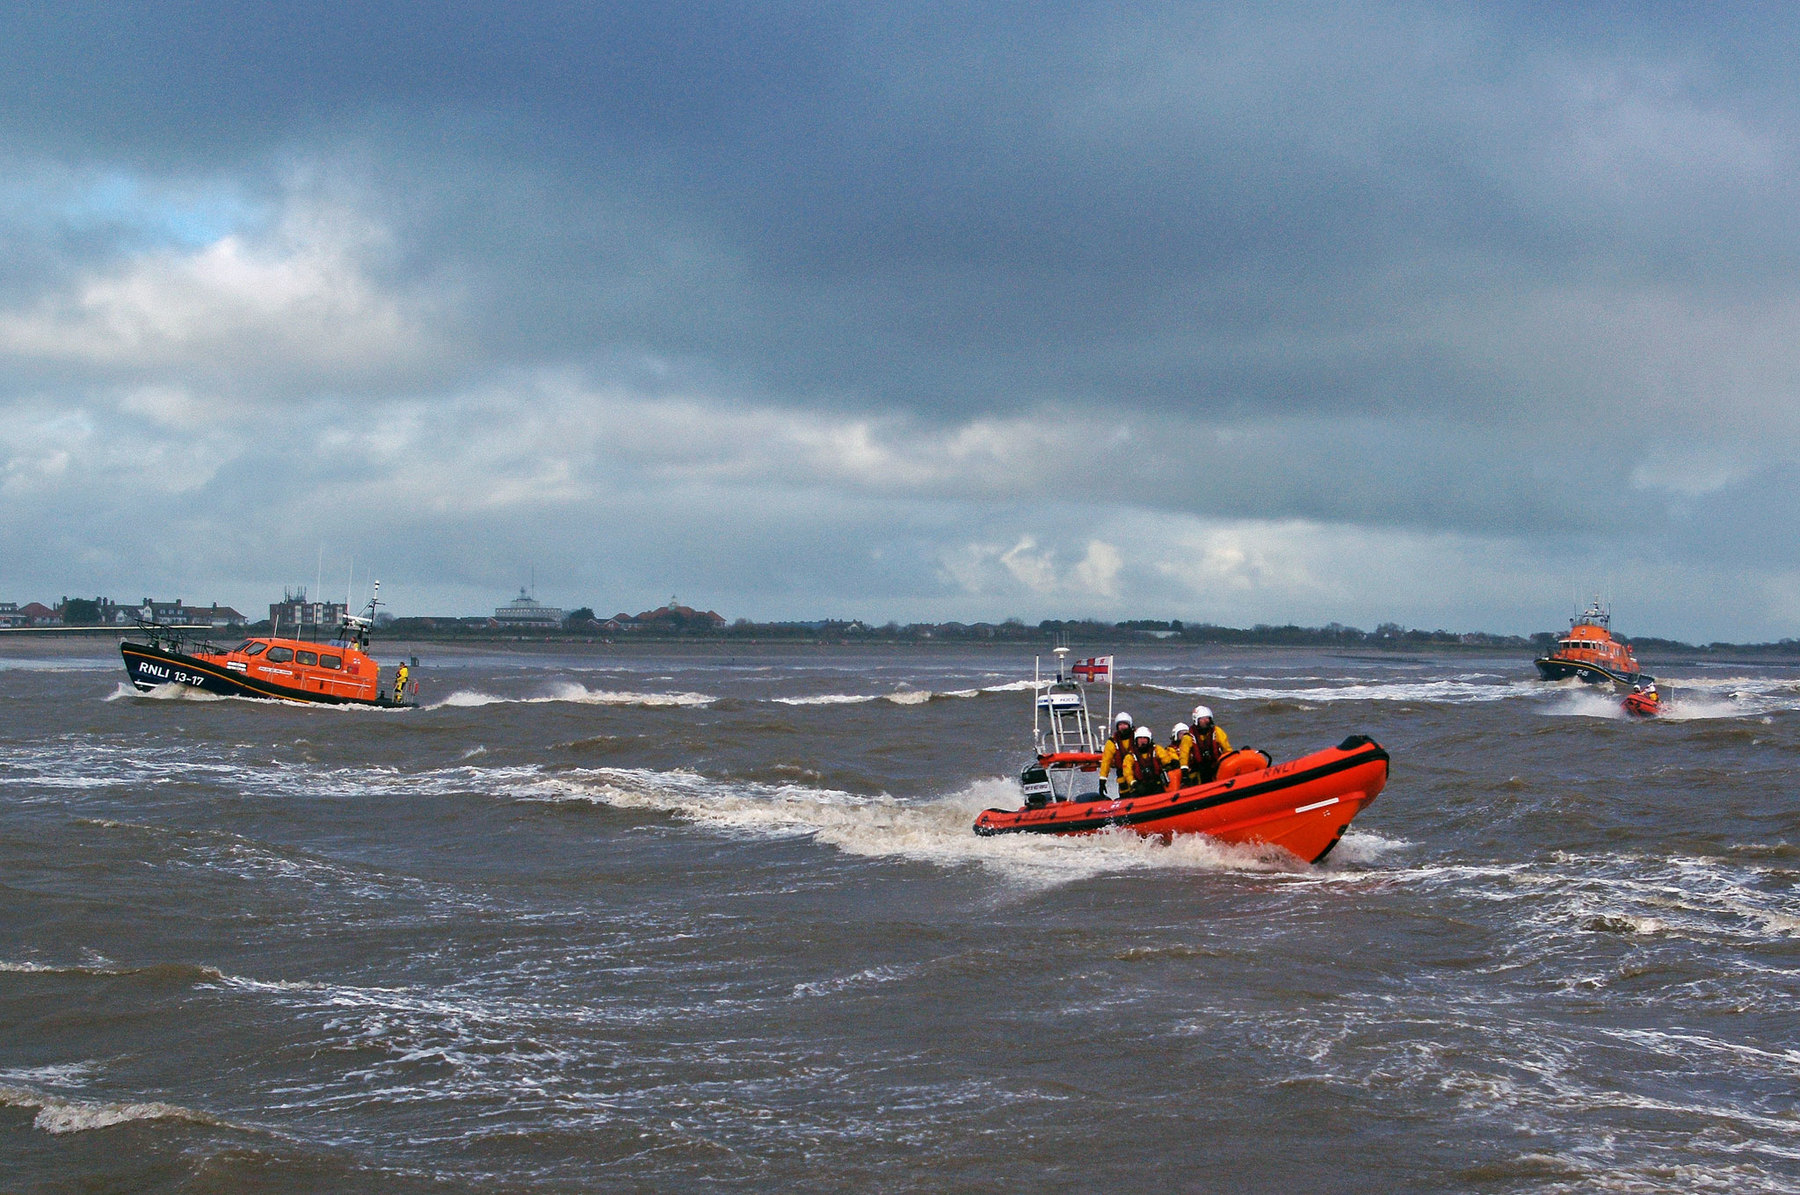 Skegness lifeboat, Hunstanton lifeboat, Humber lifebaot and Skegness inshore lifeboat off Skegness